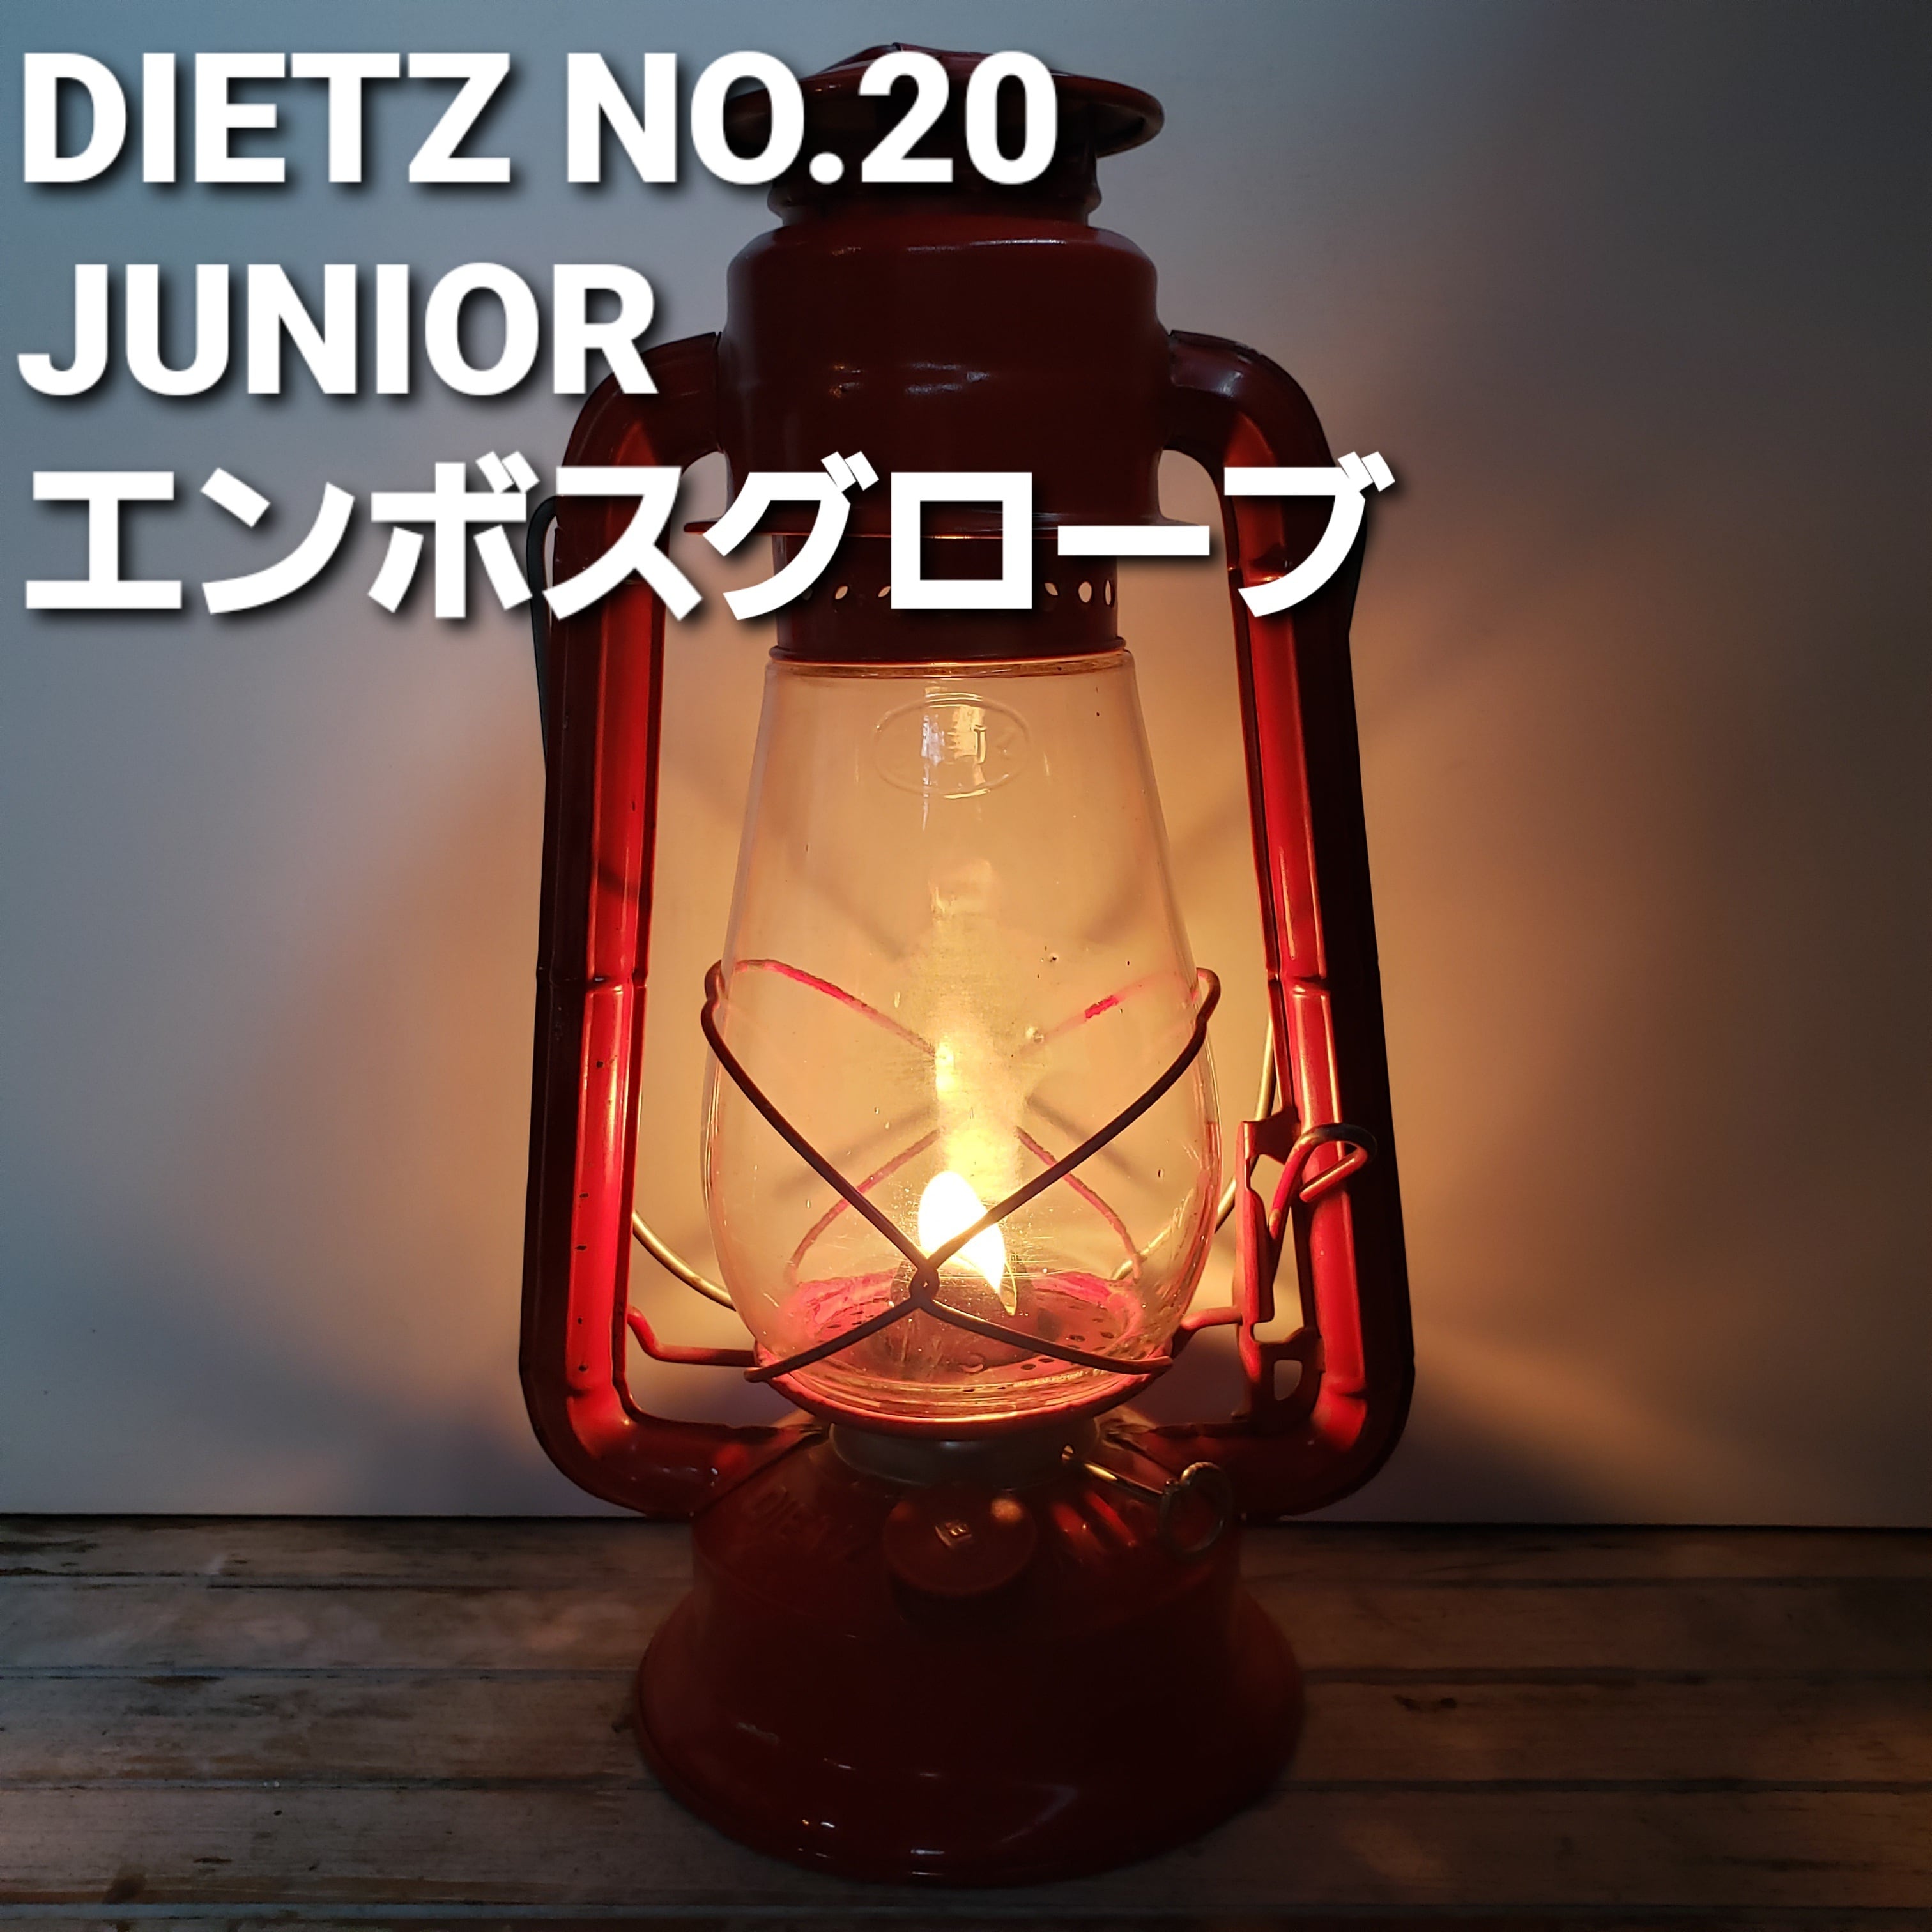 デイツ ランタン Dietz #20 Junior - ライト/ランタン